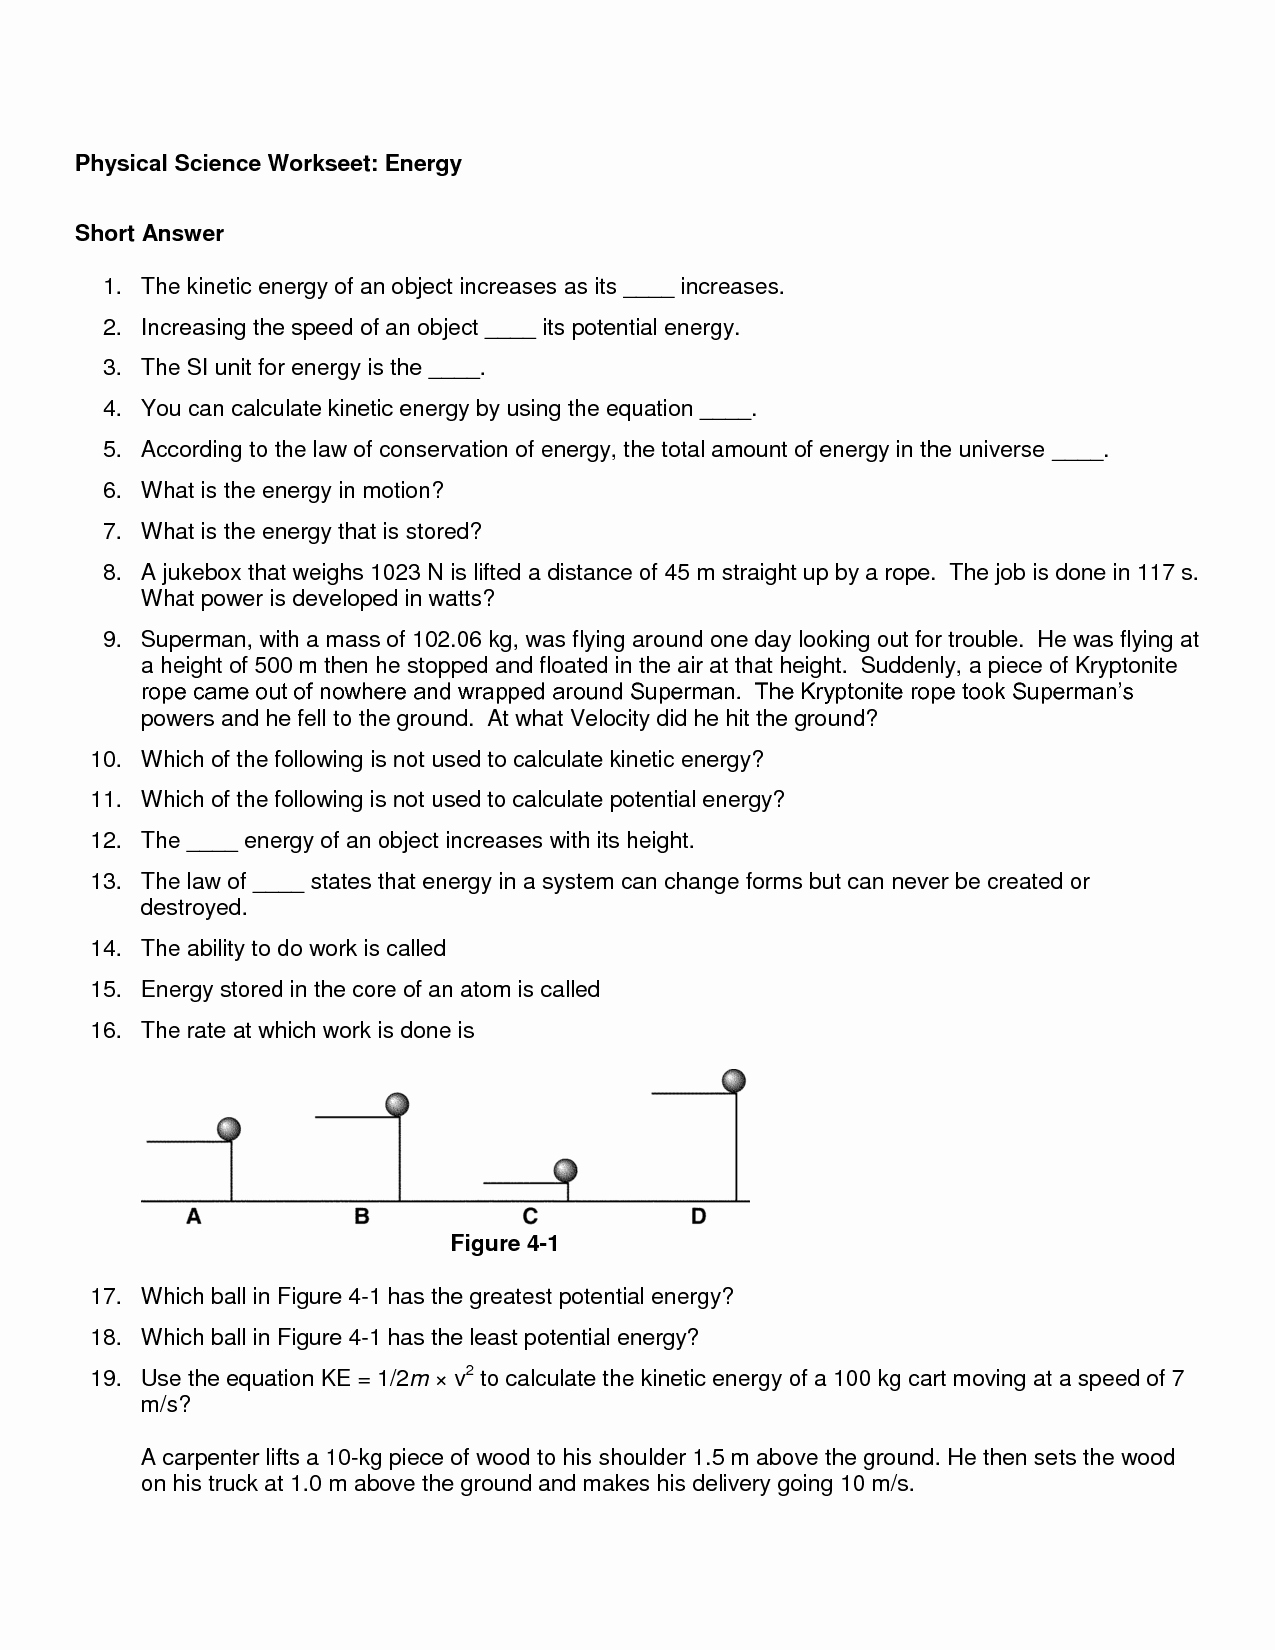 Potential Versus Kinetic Energy Worksheet Elegant Energy Worksheet Category Page 7 Worksheeto